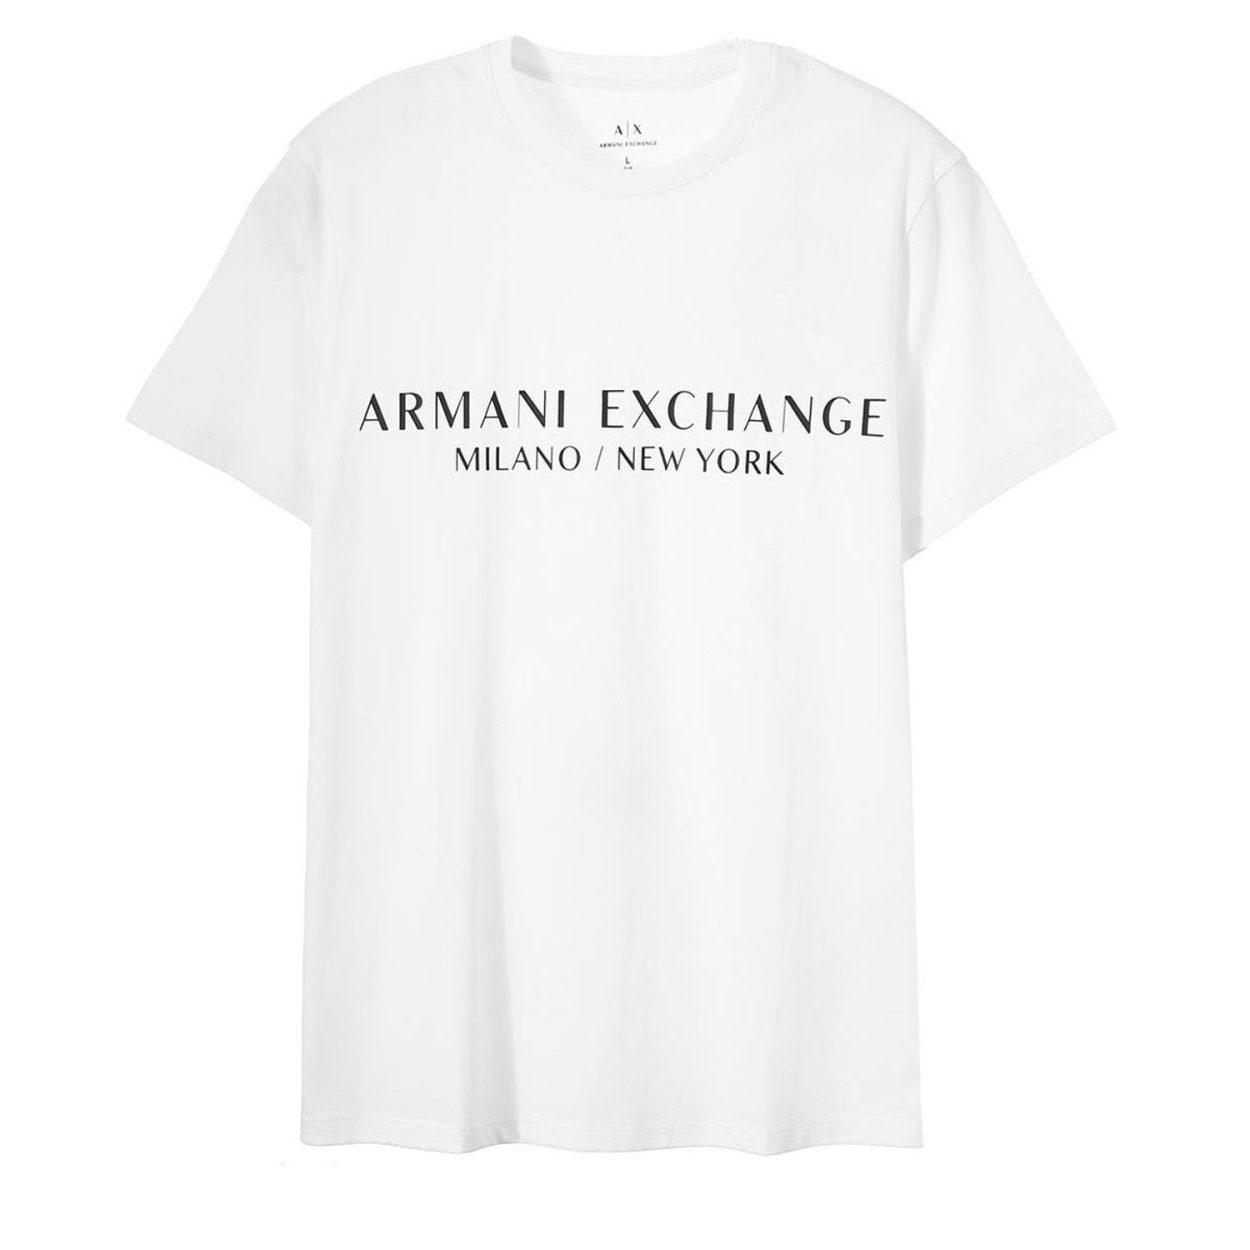 アルマーニ エクスチェンジ ARMANI EXCHANGE Tシャツ メンズ 半袖 ブランド 半そで...